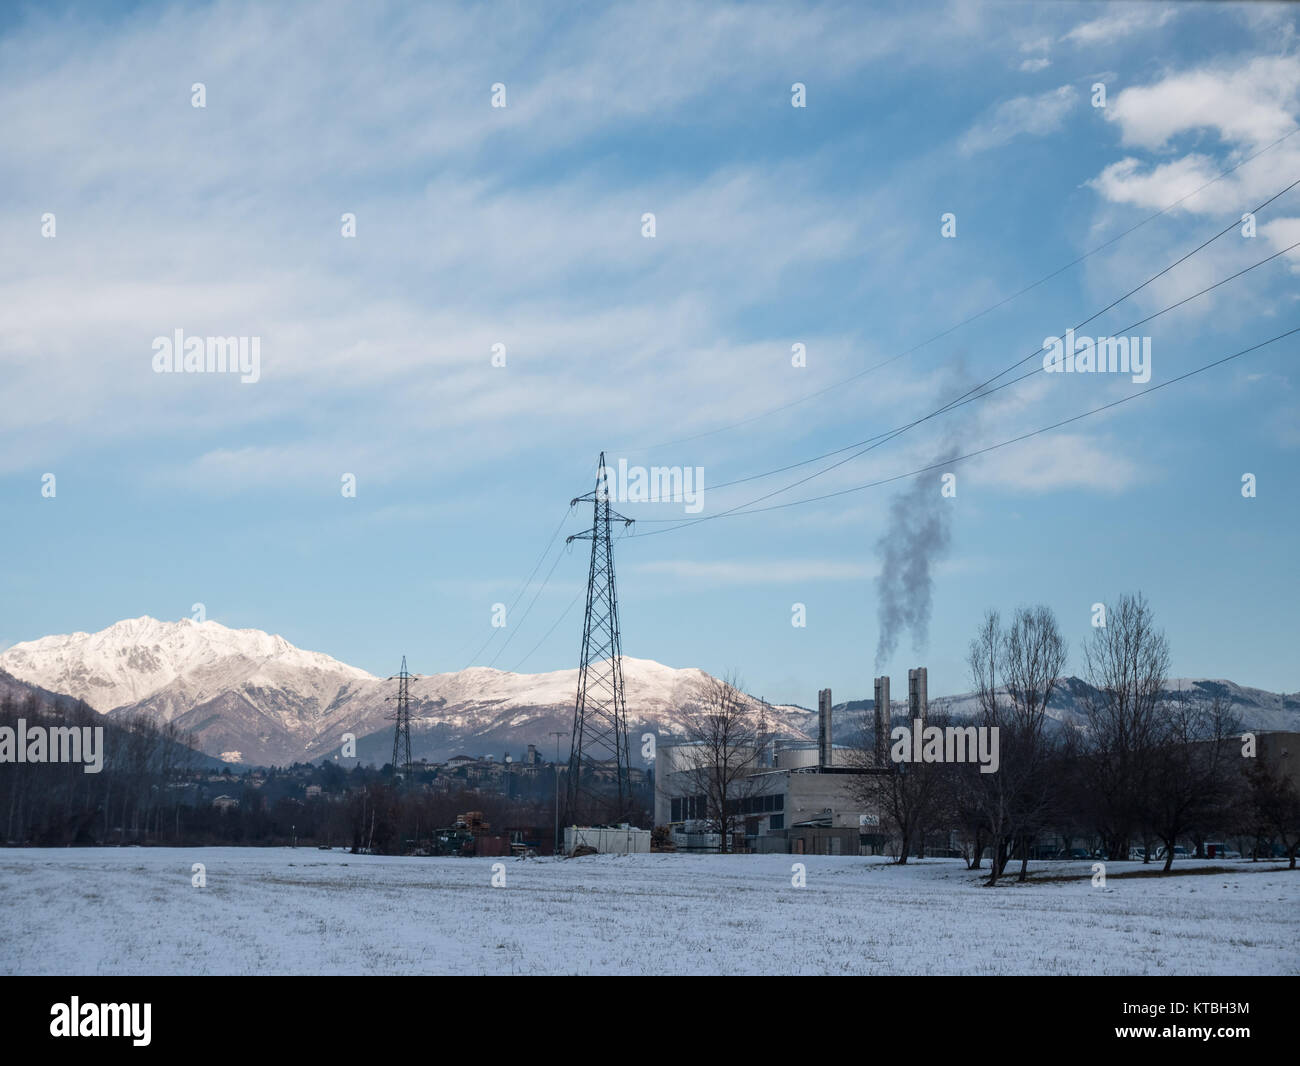 Biella, Italia - Dezember 15, 2017: industrielle Landschaft durch Schnee am Fuß der Alpen, Fabrik mit Schornsteinen, Rauch, im Land der Bi abgedeckt Stockfoto